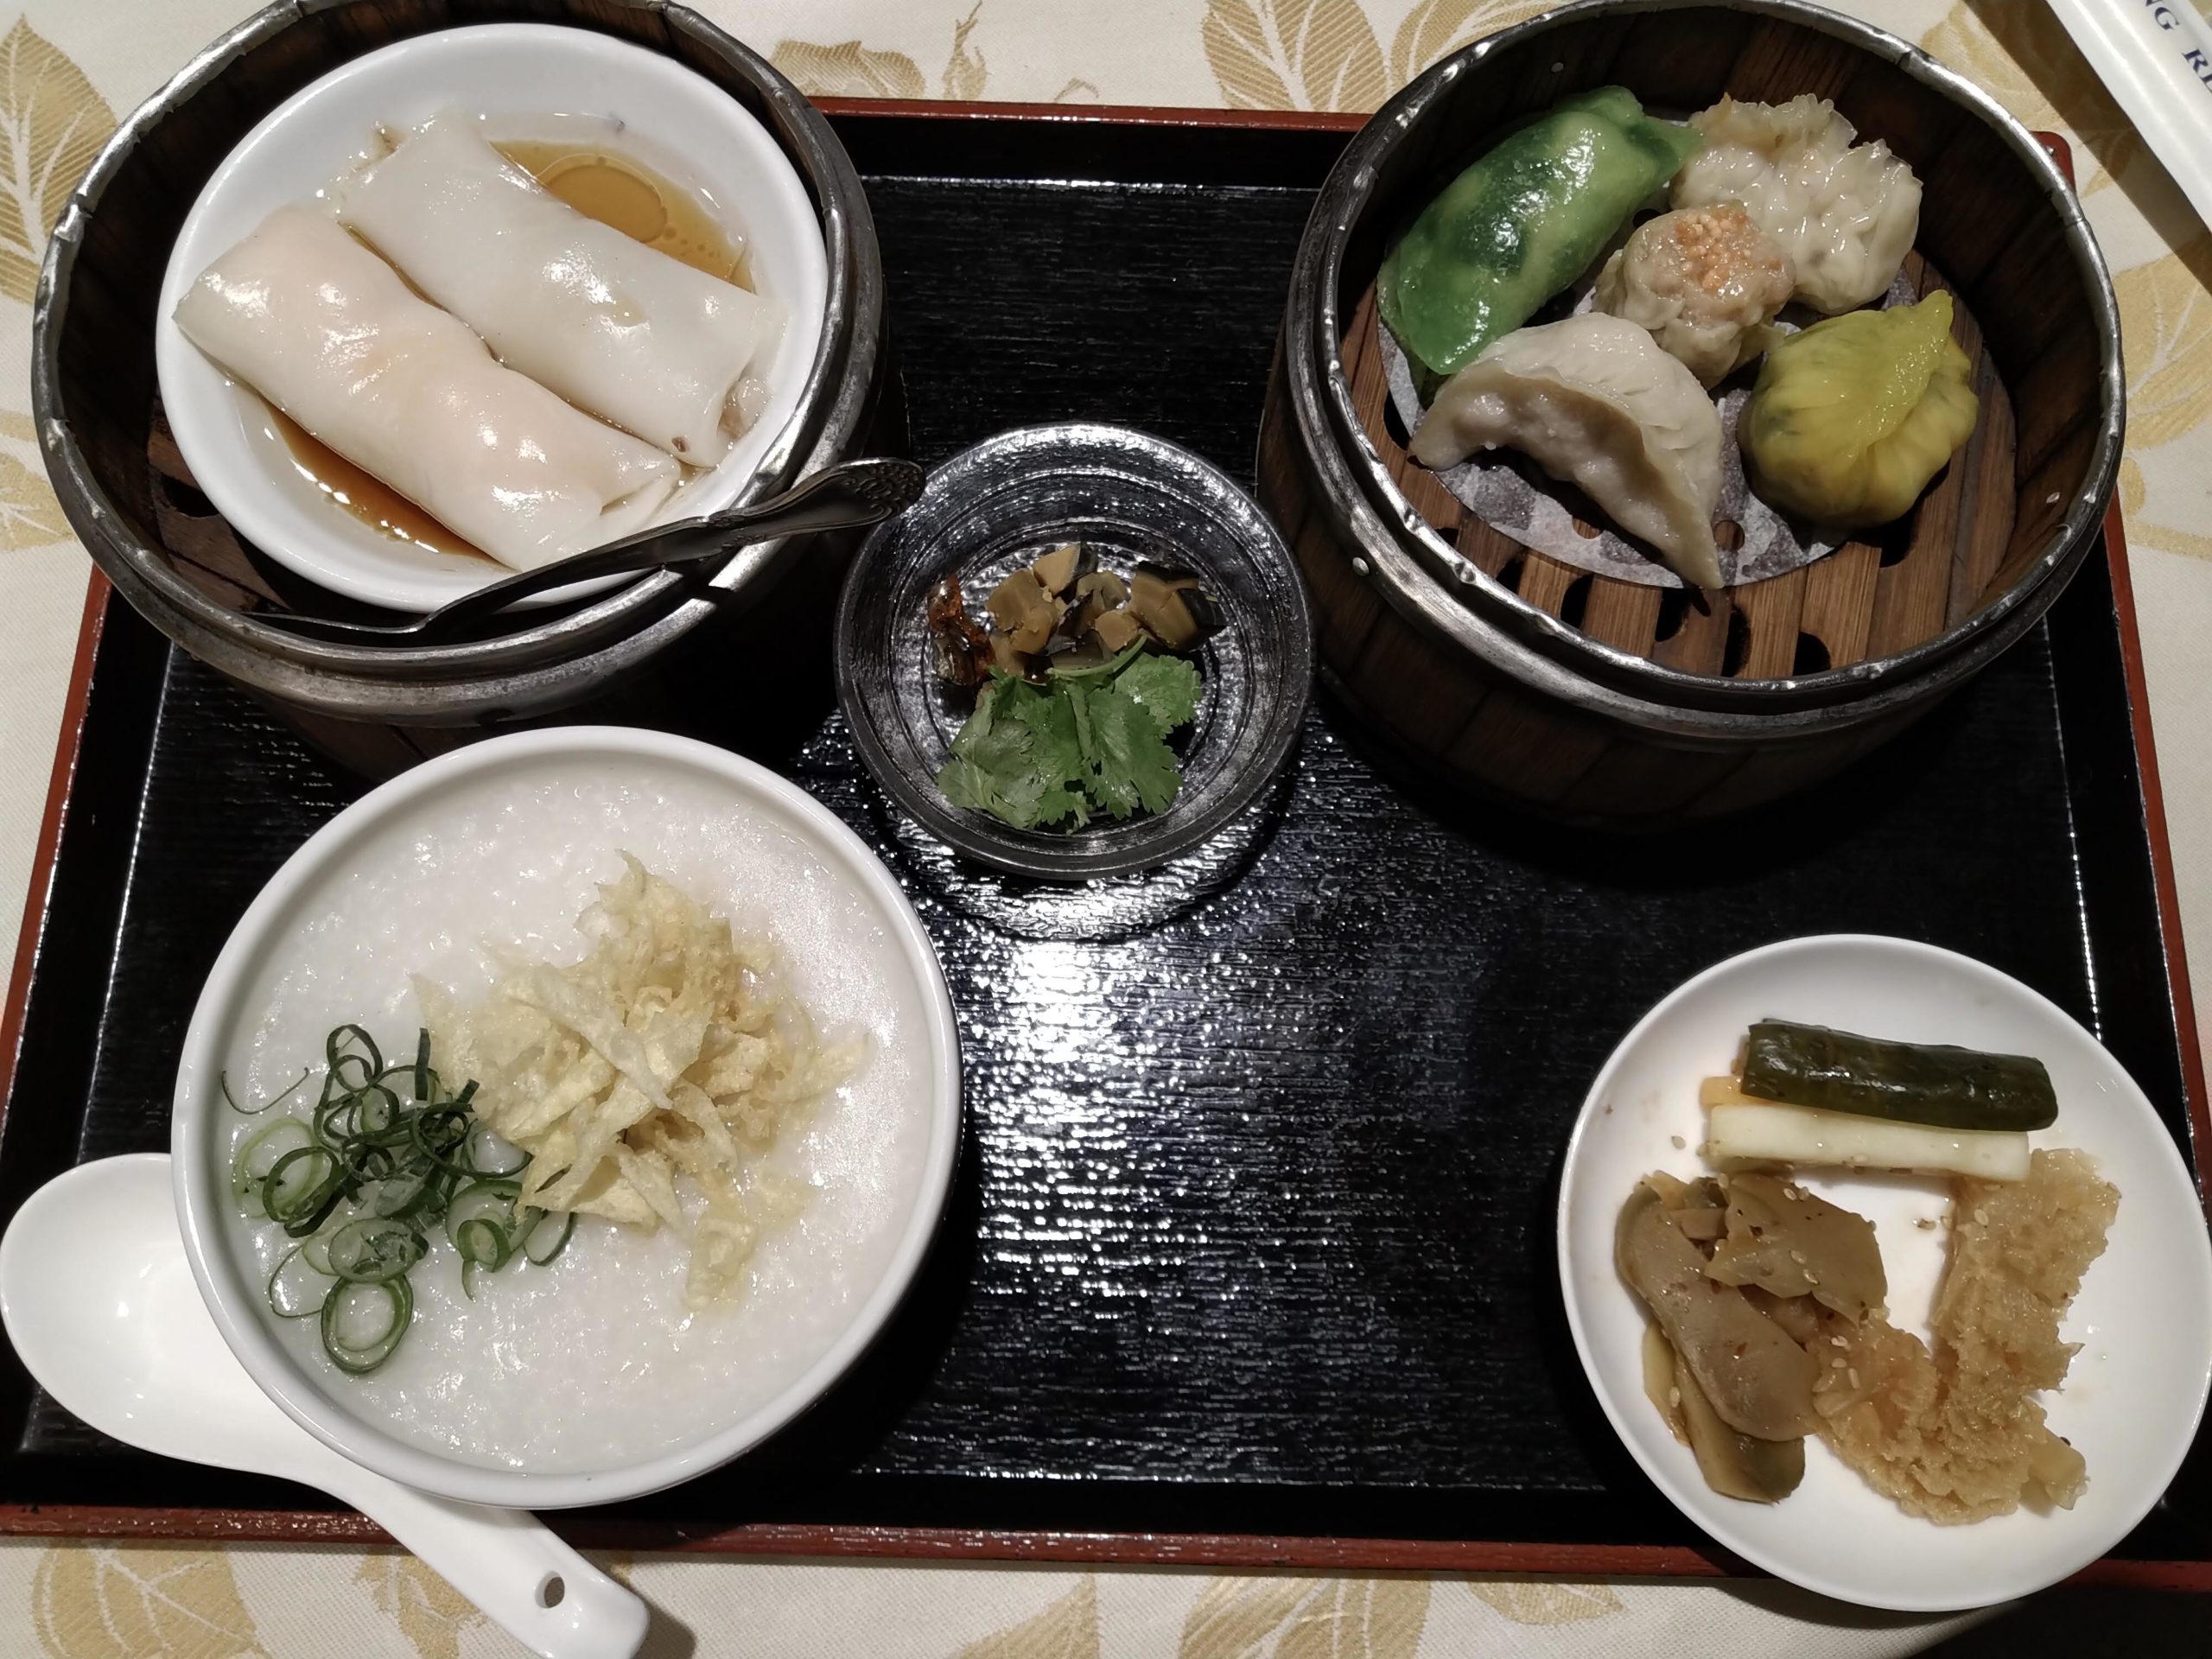 四条烏丸の 老香港酒家京都 で飲茶ランチ 本格的な香港料理と高級感のある店内は贅沢ランチにオススメ 京都ストーリー